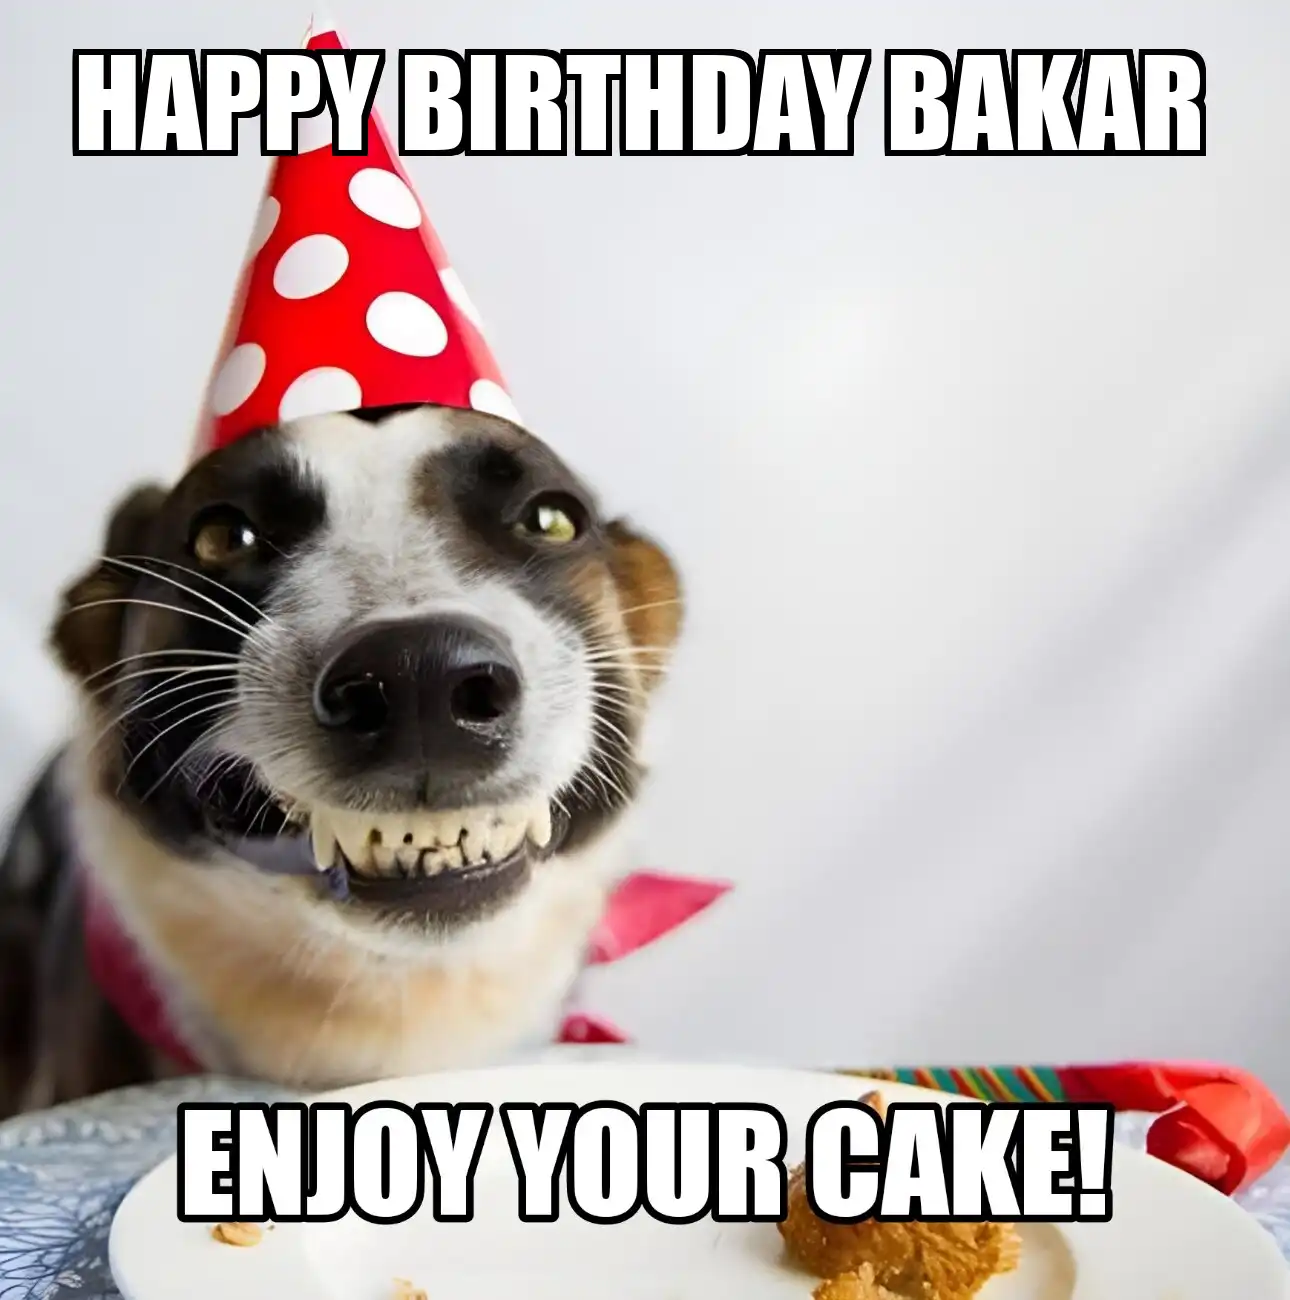 Happy Birthday Bakar Enjoy Your Cake Dog Meme